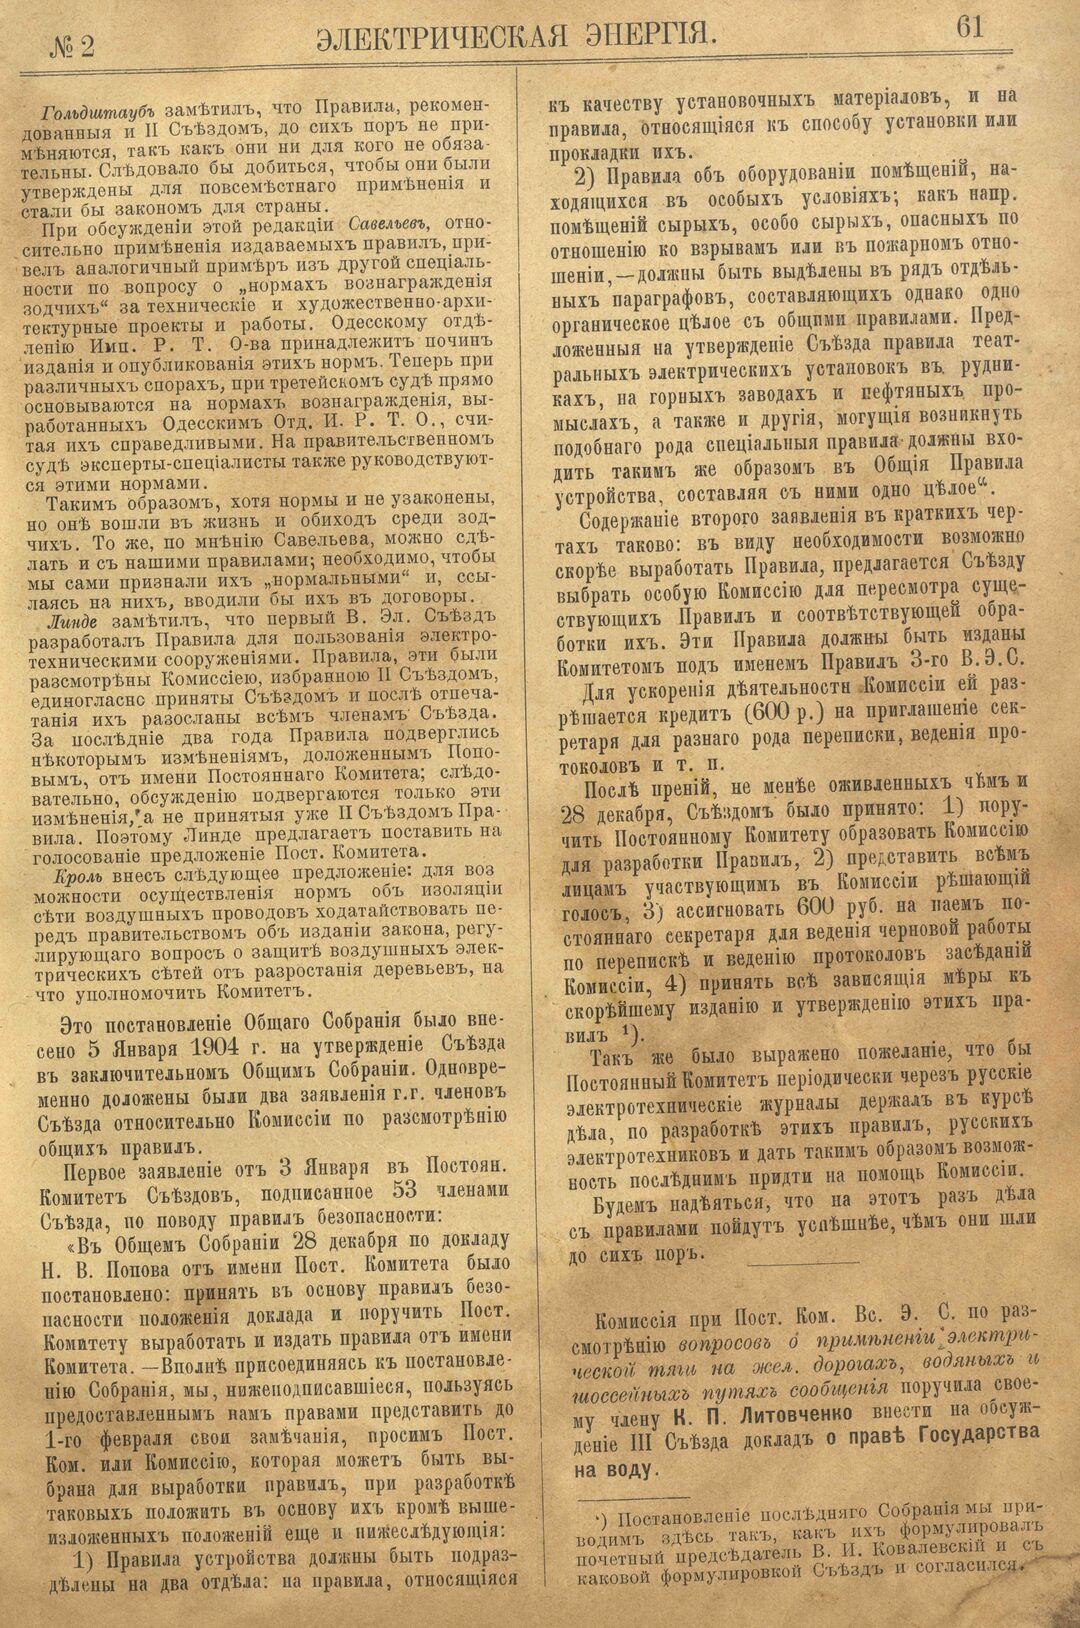 Рис. 1. Журнал Электрическая Энергiя, 2 номер, февраль, 1904 года, страница 61